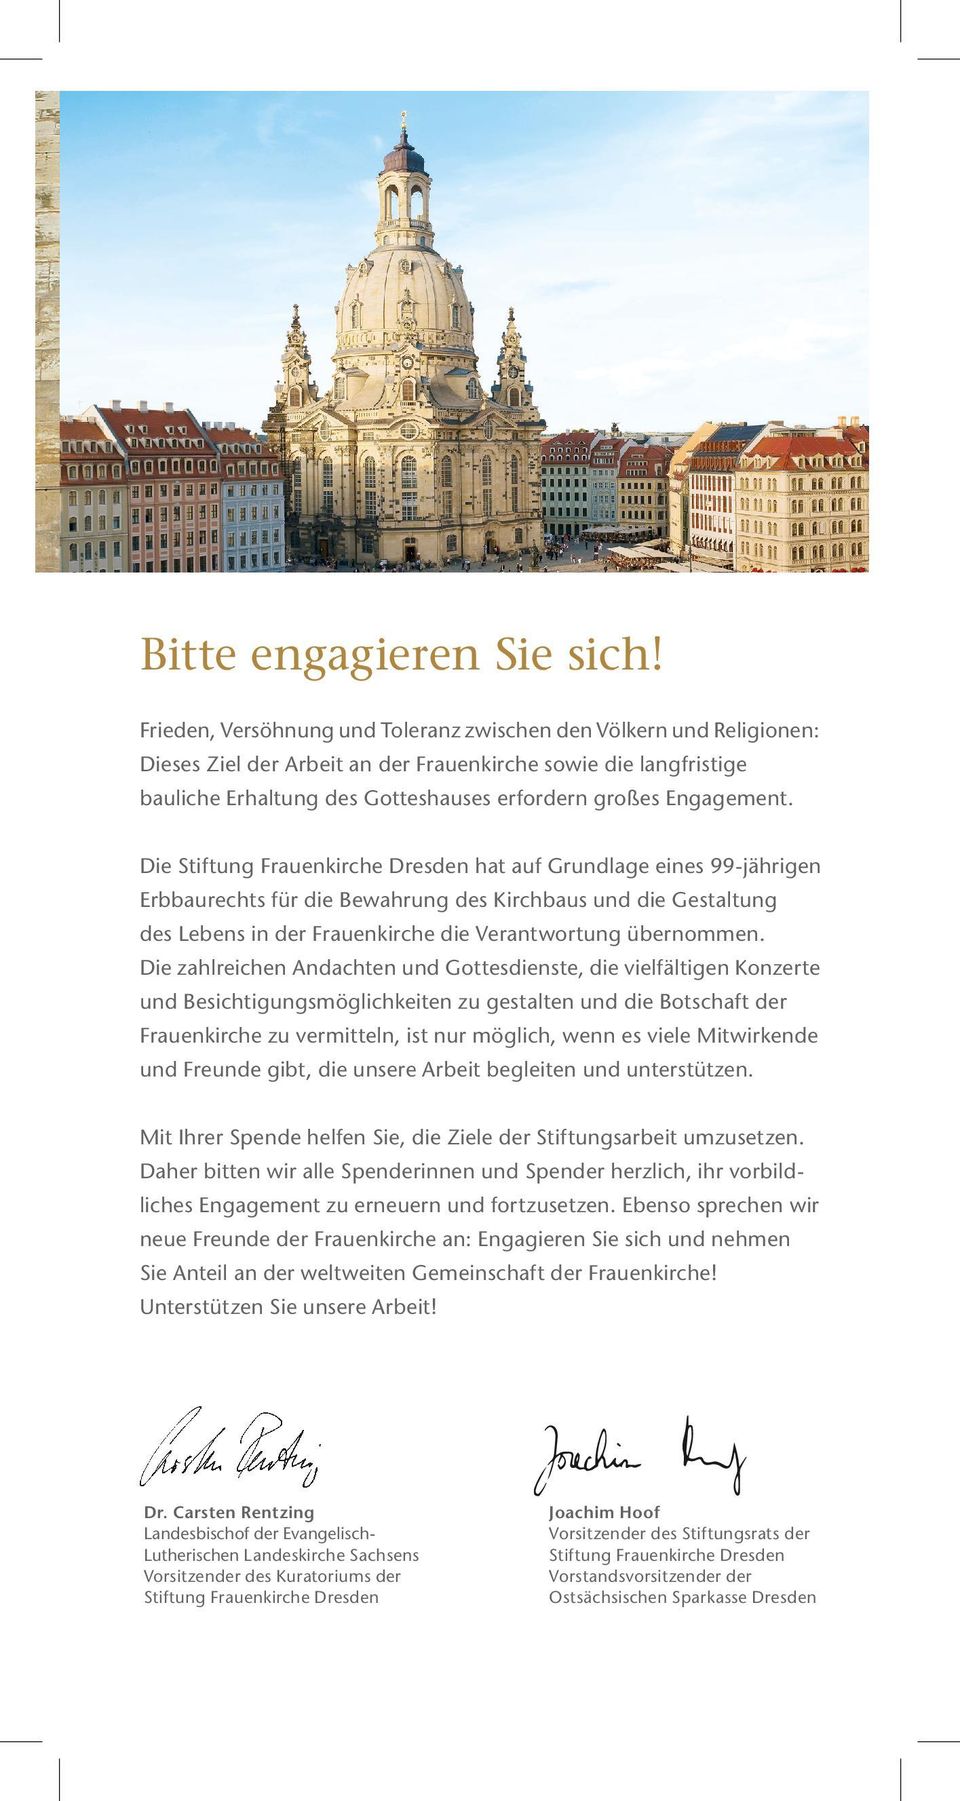 Die Stiftung Frauenkirche Dresden hat auf Grundlage eines 99-jährigen Erbbaurechts für die Bewahrung des Kirchbaus und die Gestaltung des Lebens in der Frauenkirche die Verantwortung übernommen.